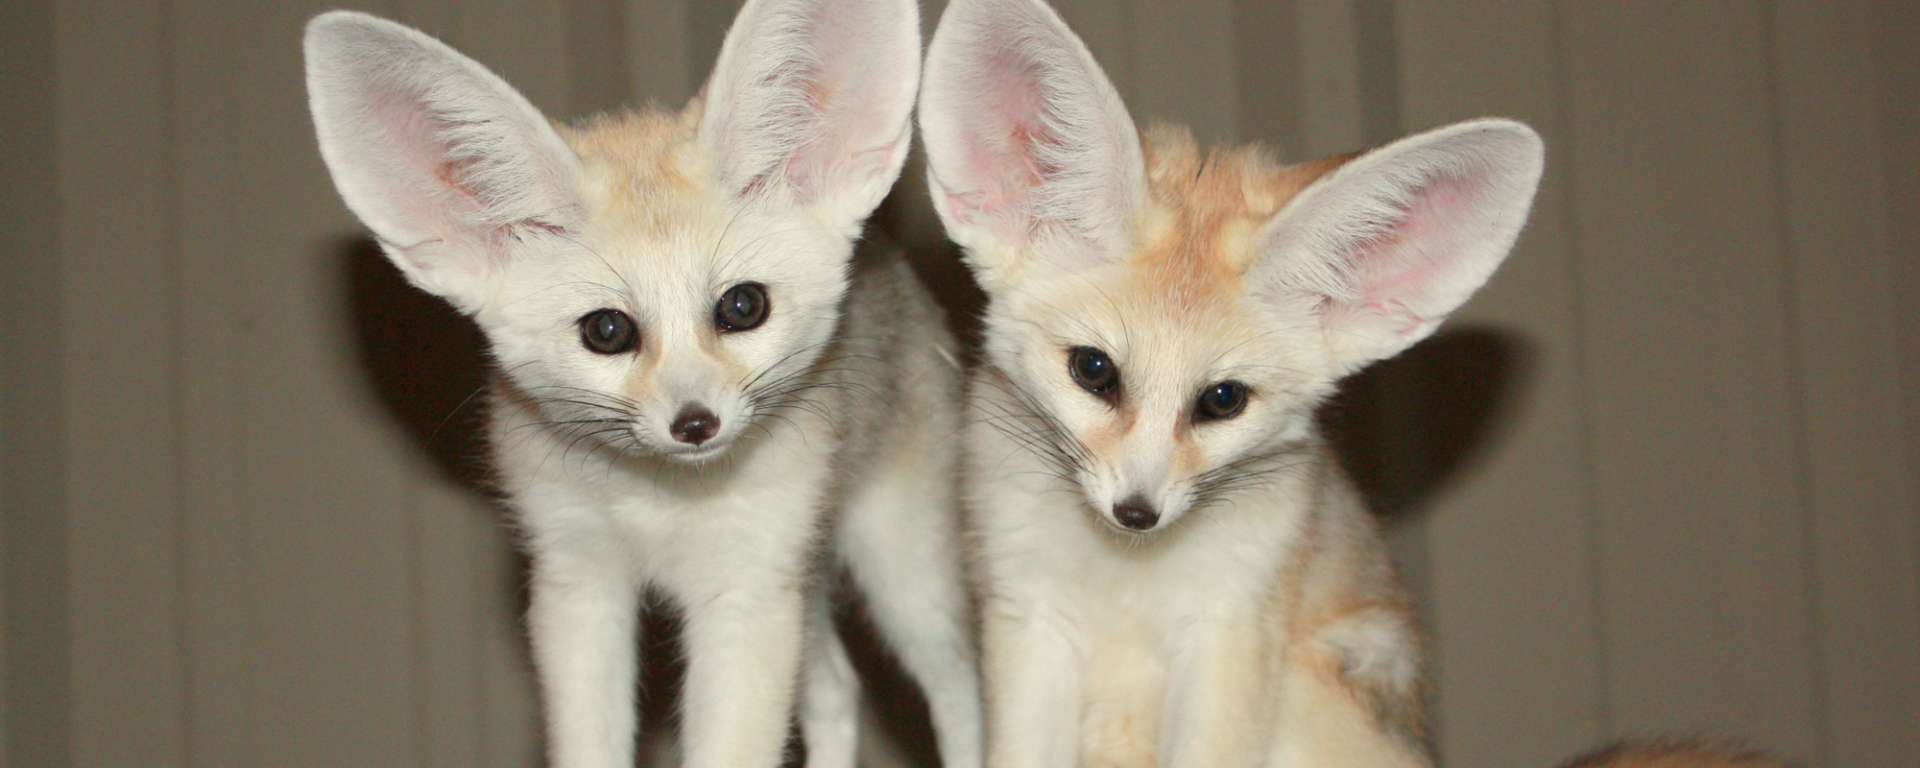 baby fennec fox